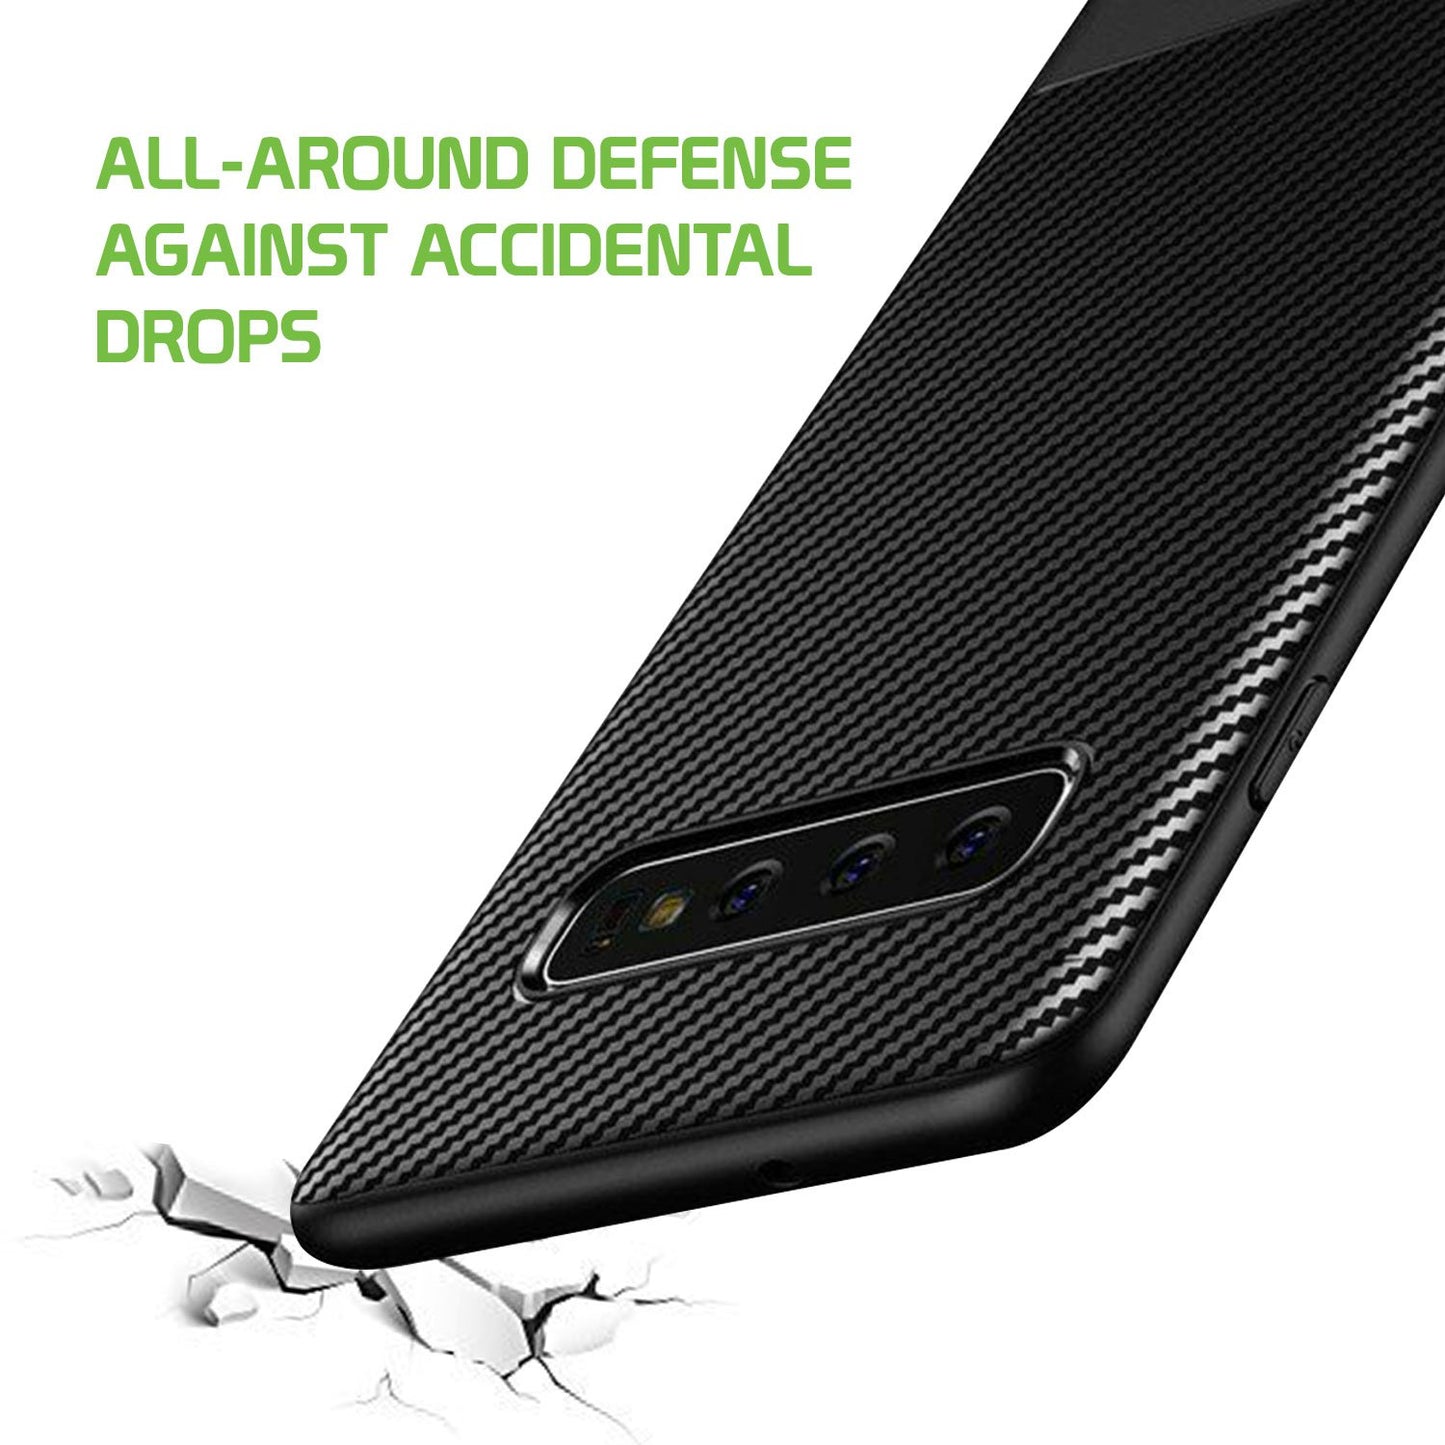 CCSAMS10BBK - Samsung Galaxy S10 Heavy Duty Slim Case Protector Cover - Black